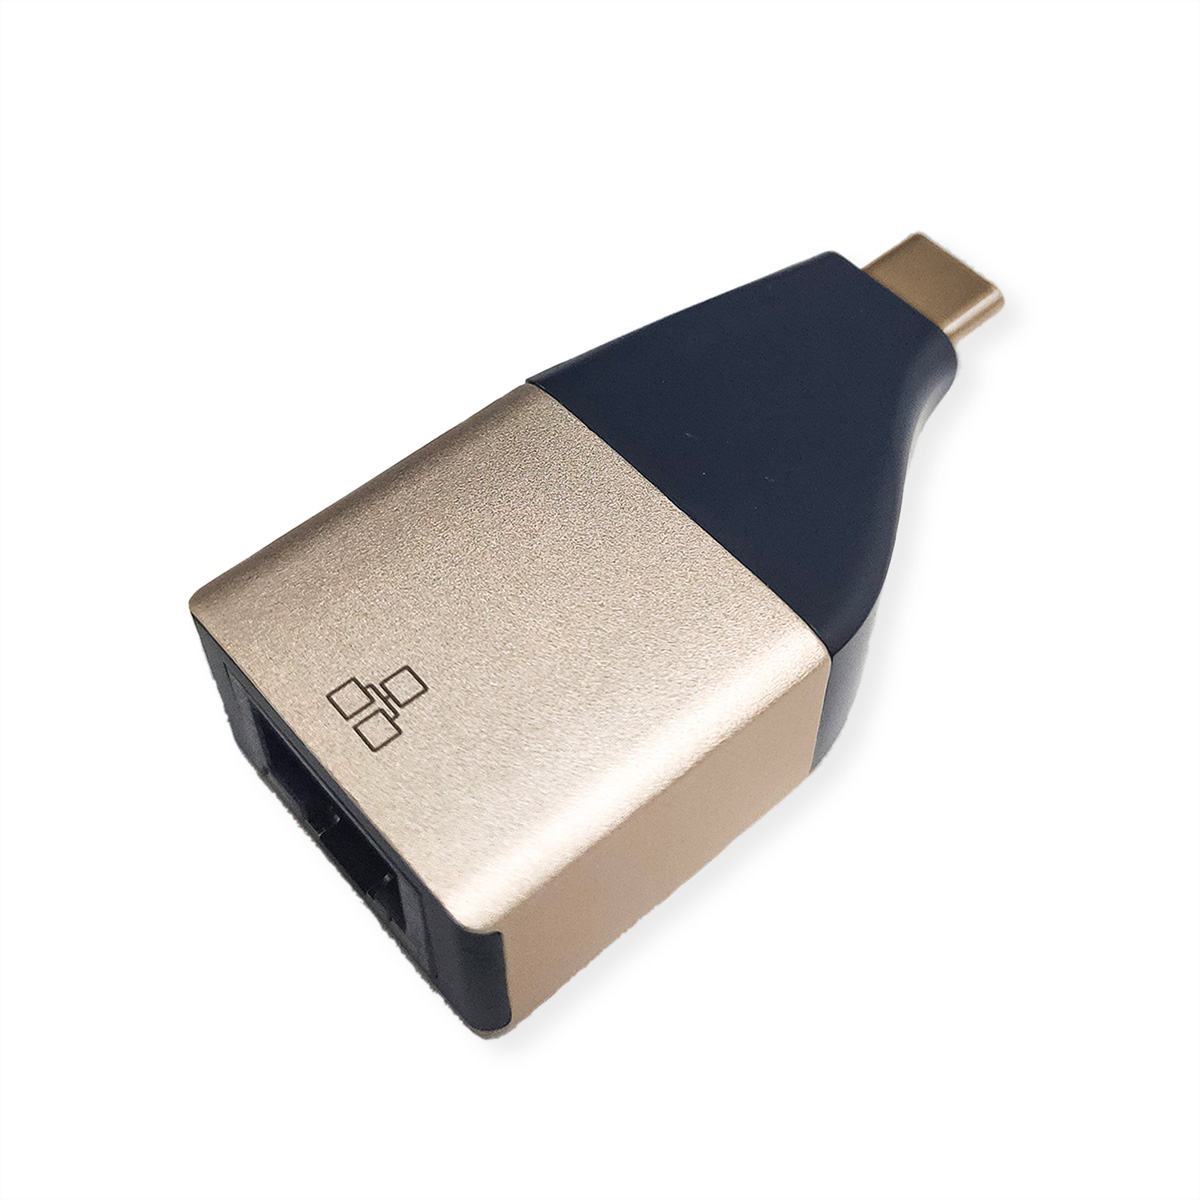 ROLINE GOLD 3.2 zu 2 Konverter Gen Gigabit Konverter Ethernet Ethernet Gigabit USB